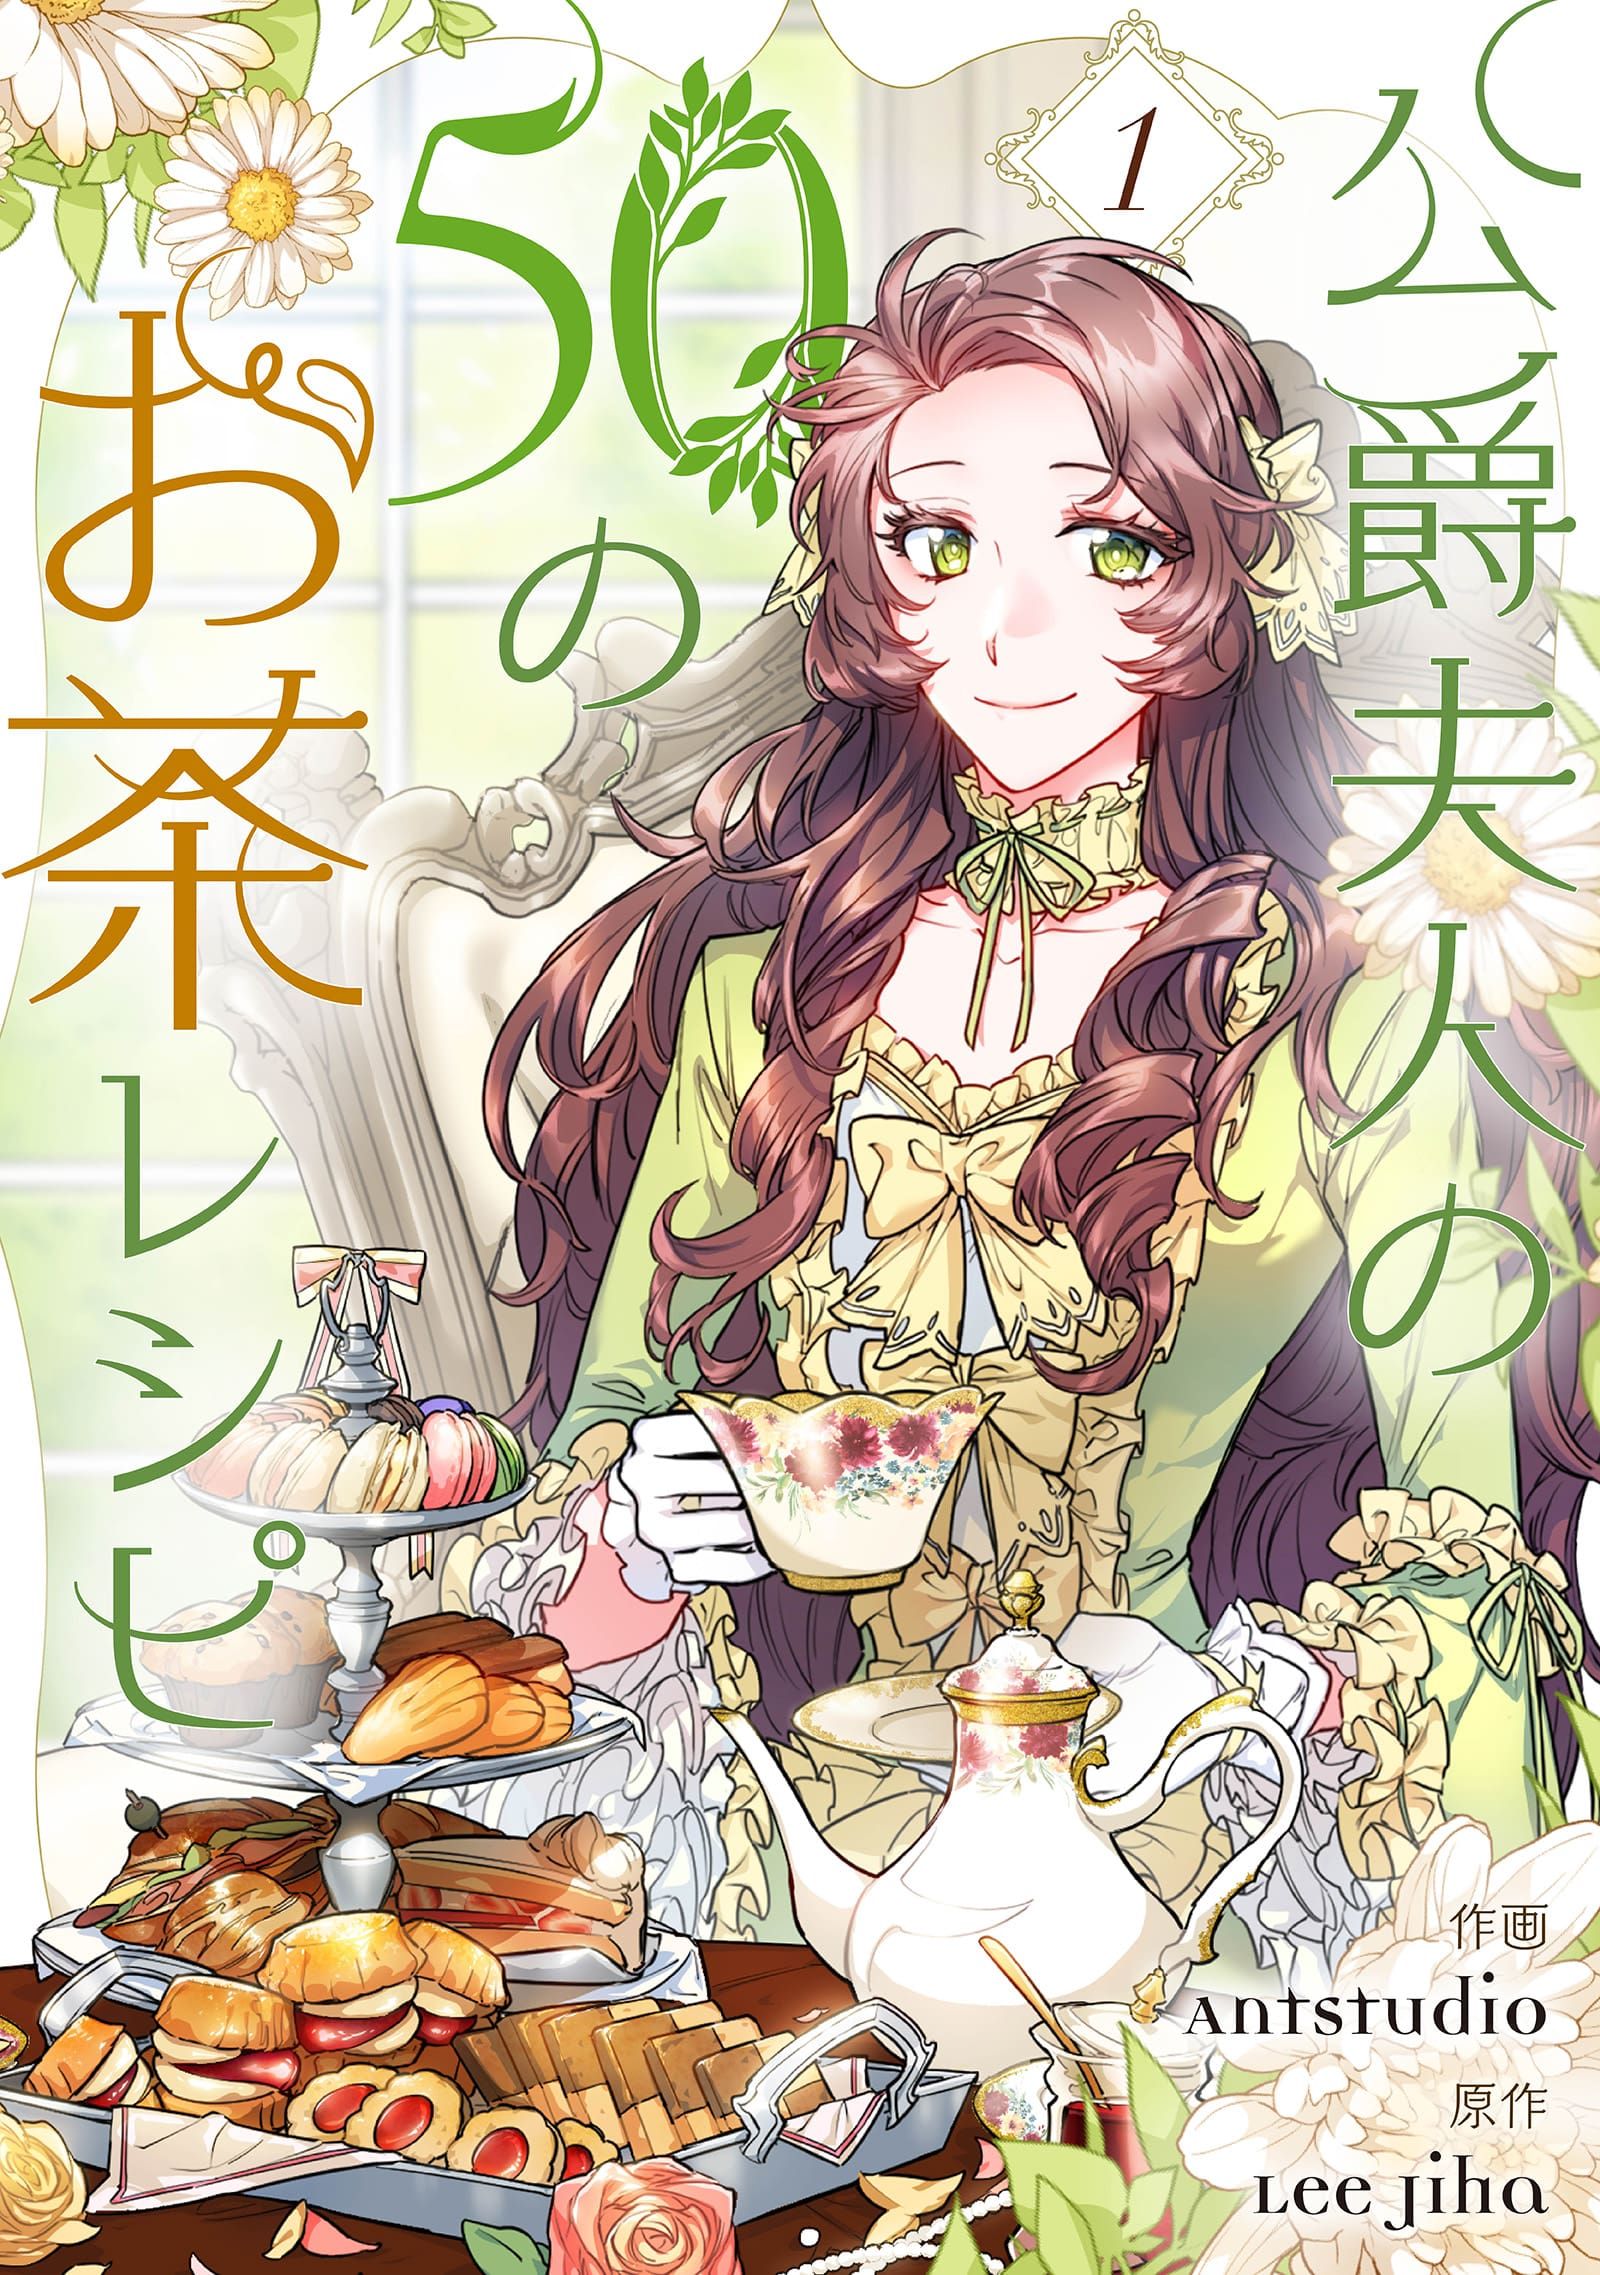 公爵夫人の50のお茶レシピ 1 - Antstudio/Lee Jiha - 少女マンガ・無料 